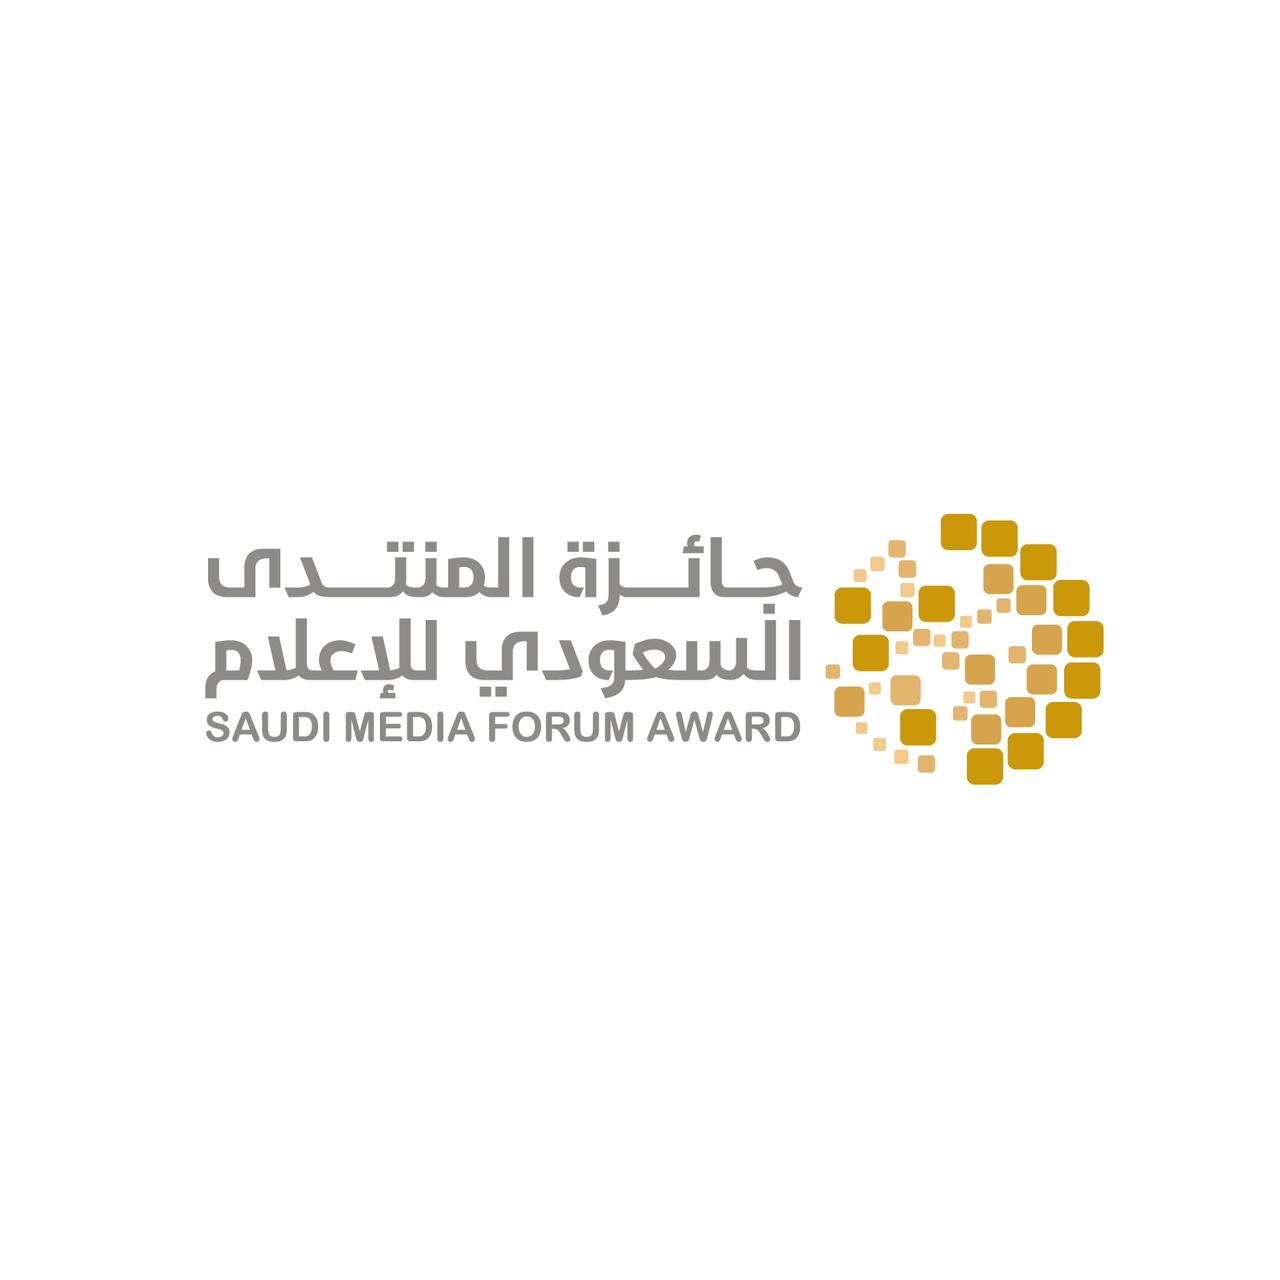 جائزة المنتدى السعودي للإعلام تسجل 1000 مشارك خلال 72 ساعة